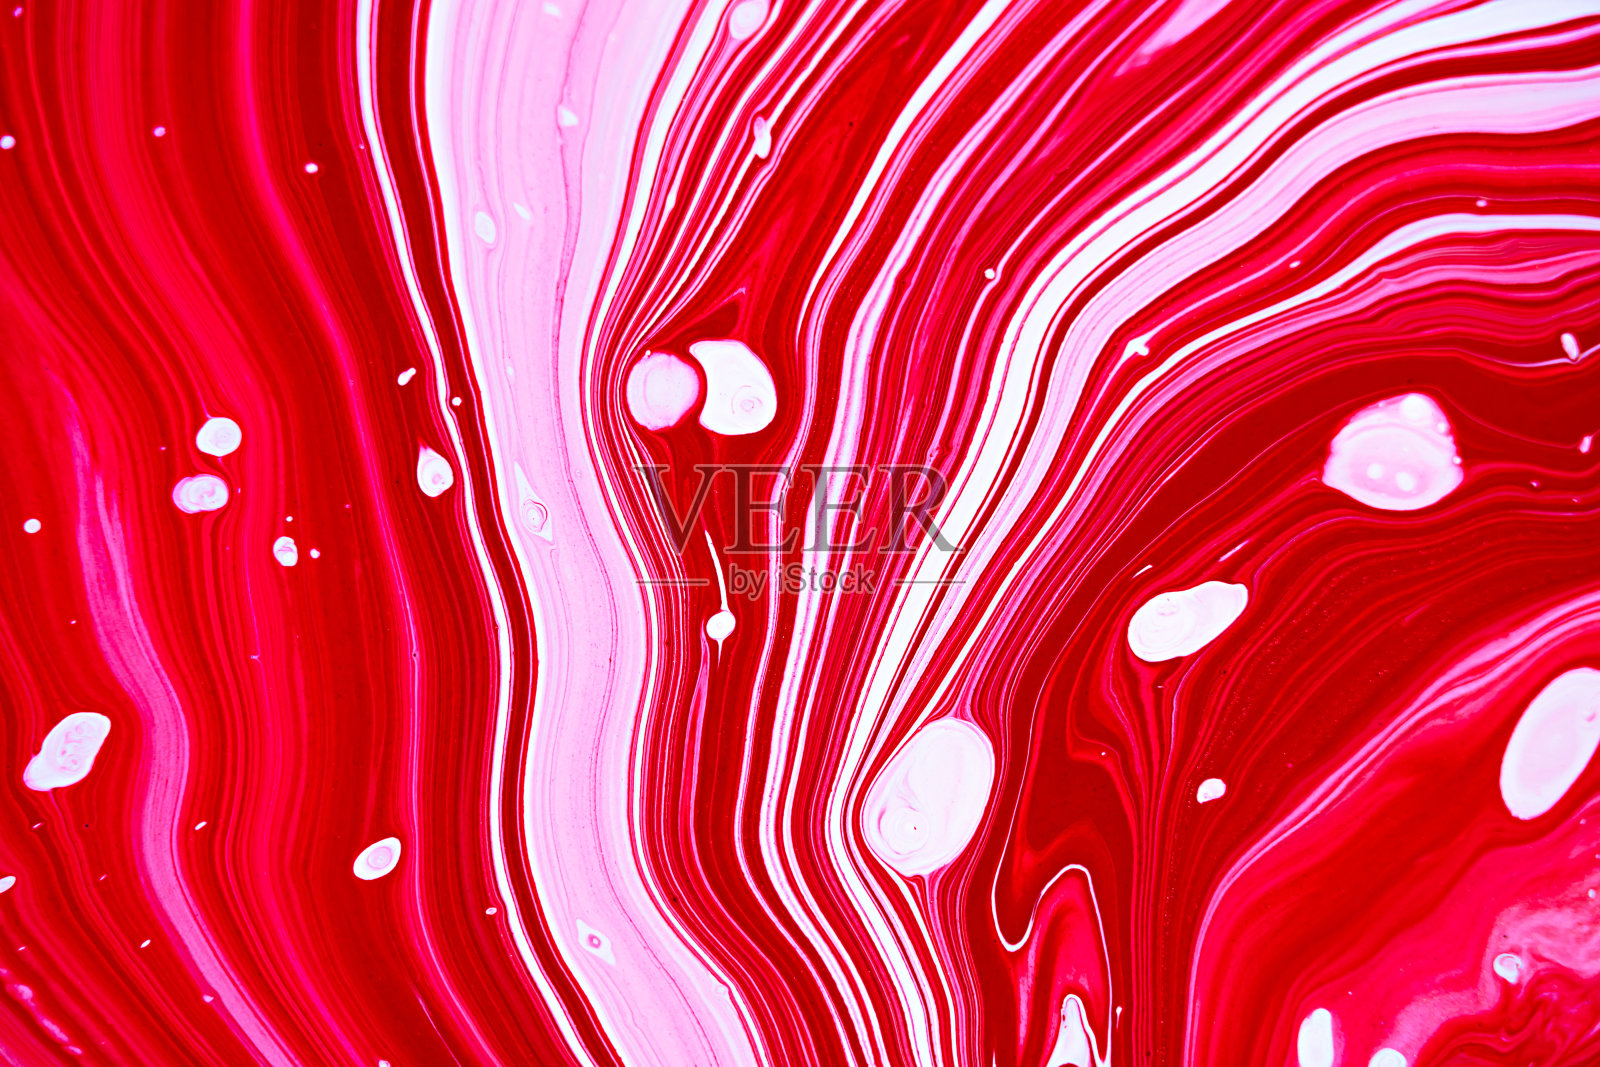 明亮的品红色、粉红色和白色大理石花纹光栅背景。彩色液体条纹极简时尚的油漆纹理。玫瑰红色抽象流体艺术。丙烯酸和油流动的现代创意背景。插画图片素材